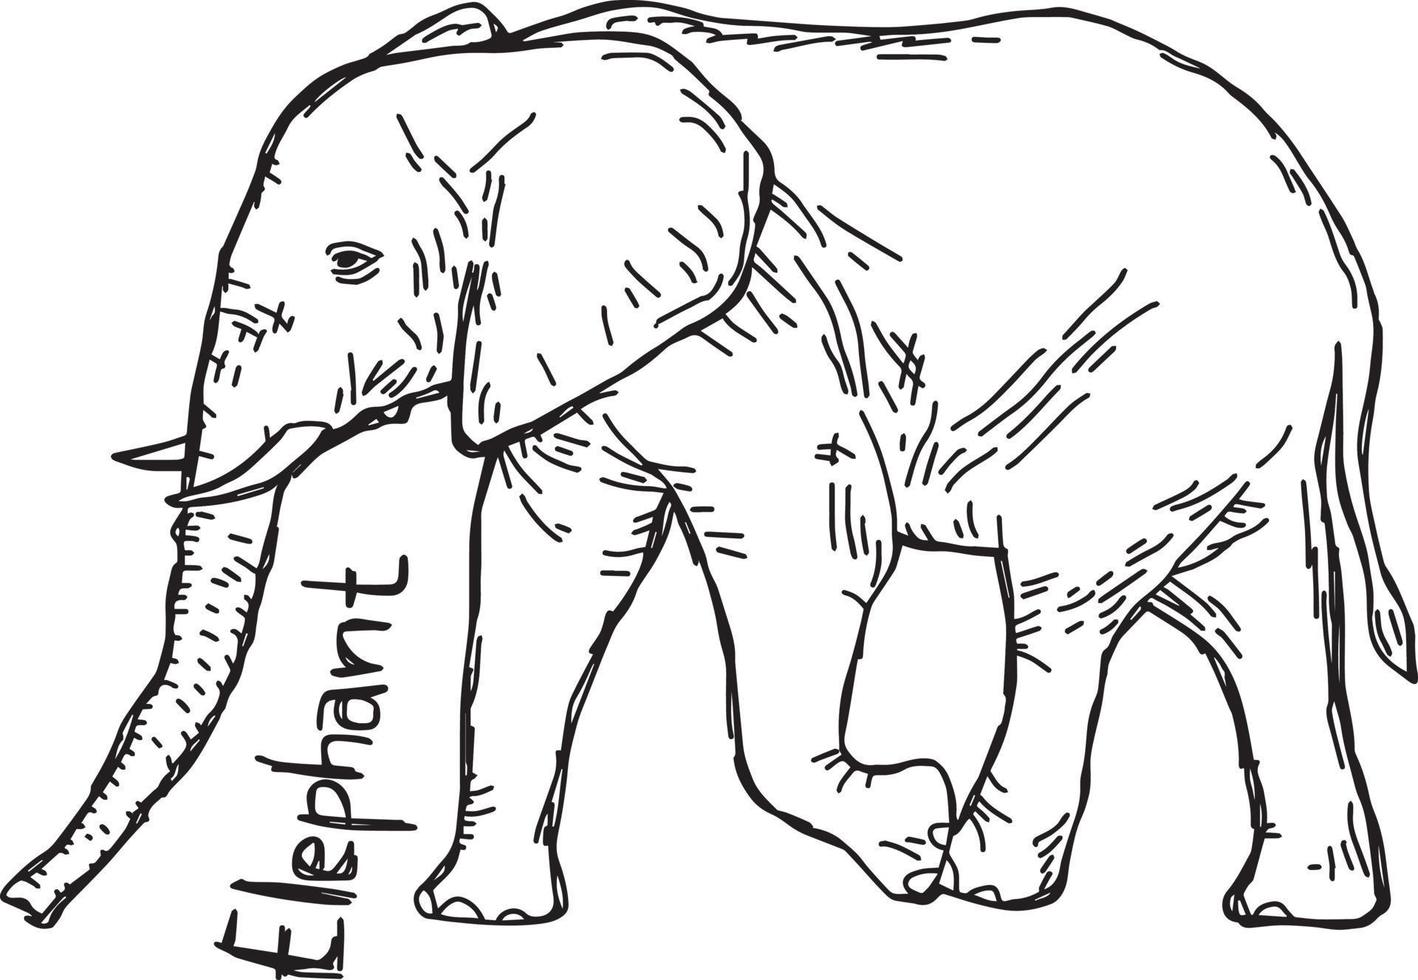 olifant - vector illustratie schets handgetekende